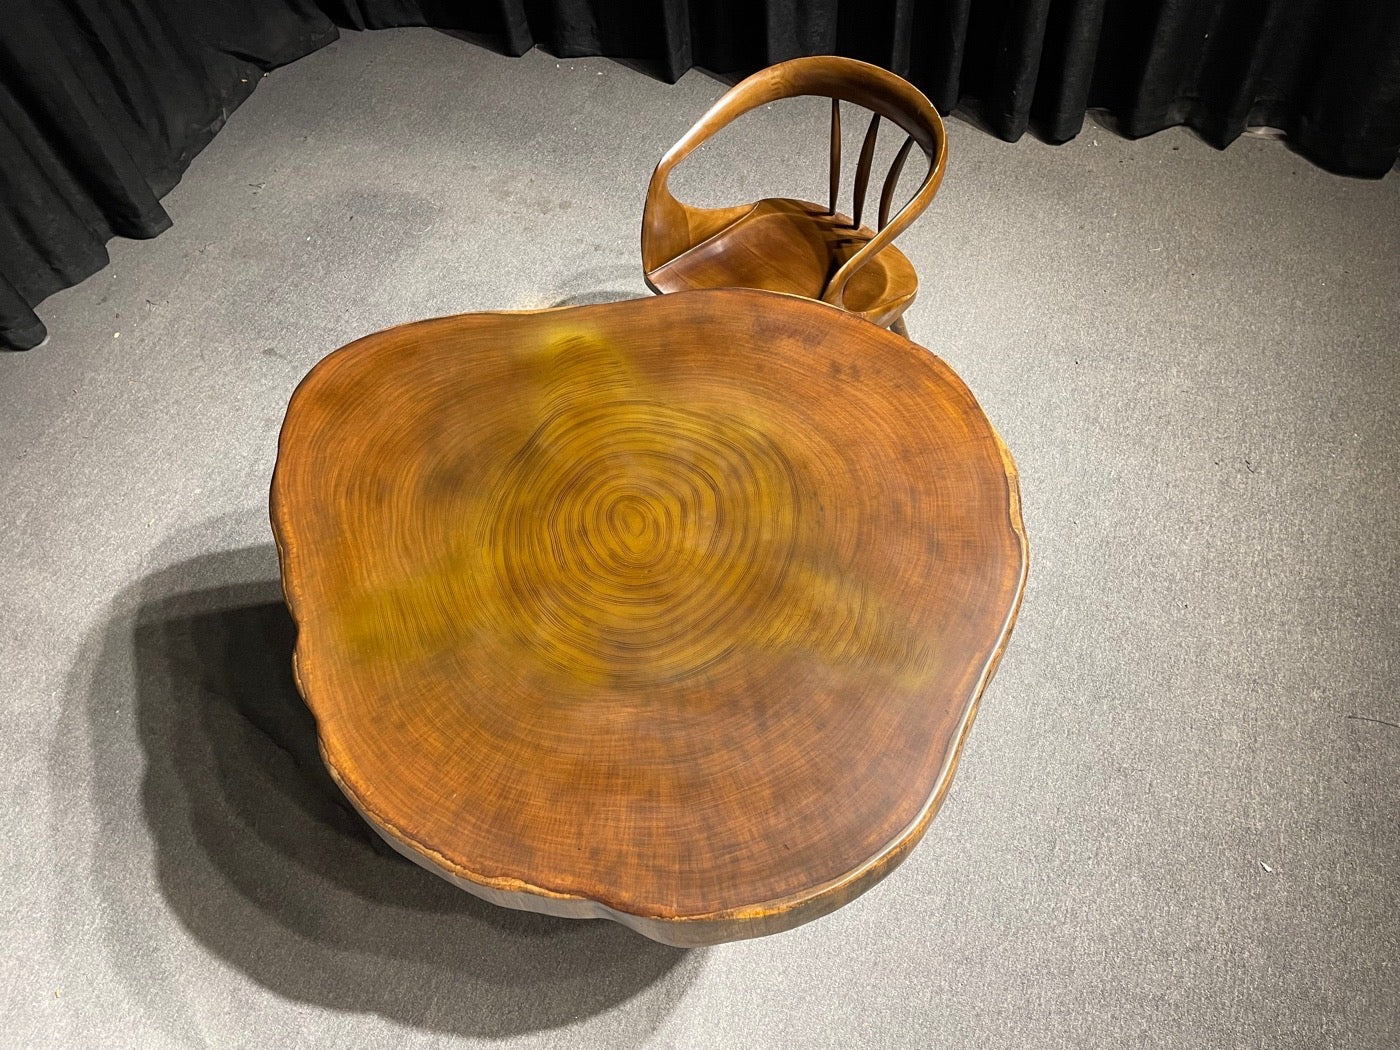 طاولة خارجية من خشب الساج ذات حافة حية، وطاولة قهوة حديثة في منتصف القرن، وطاولة قهوة من الخشب الطبيعي، ومقعد حديقة